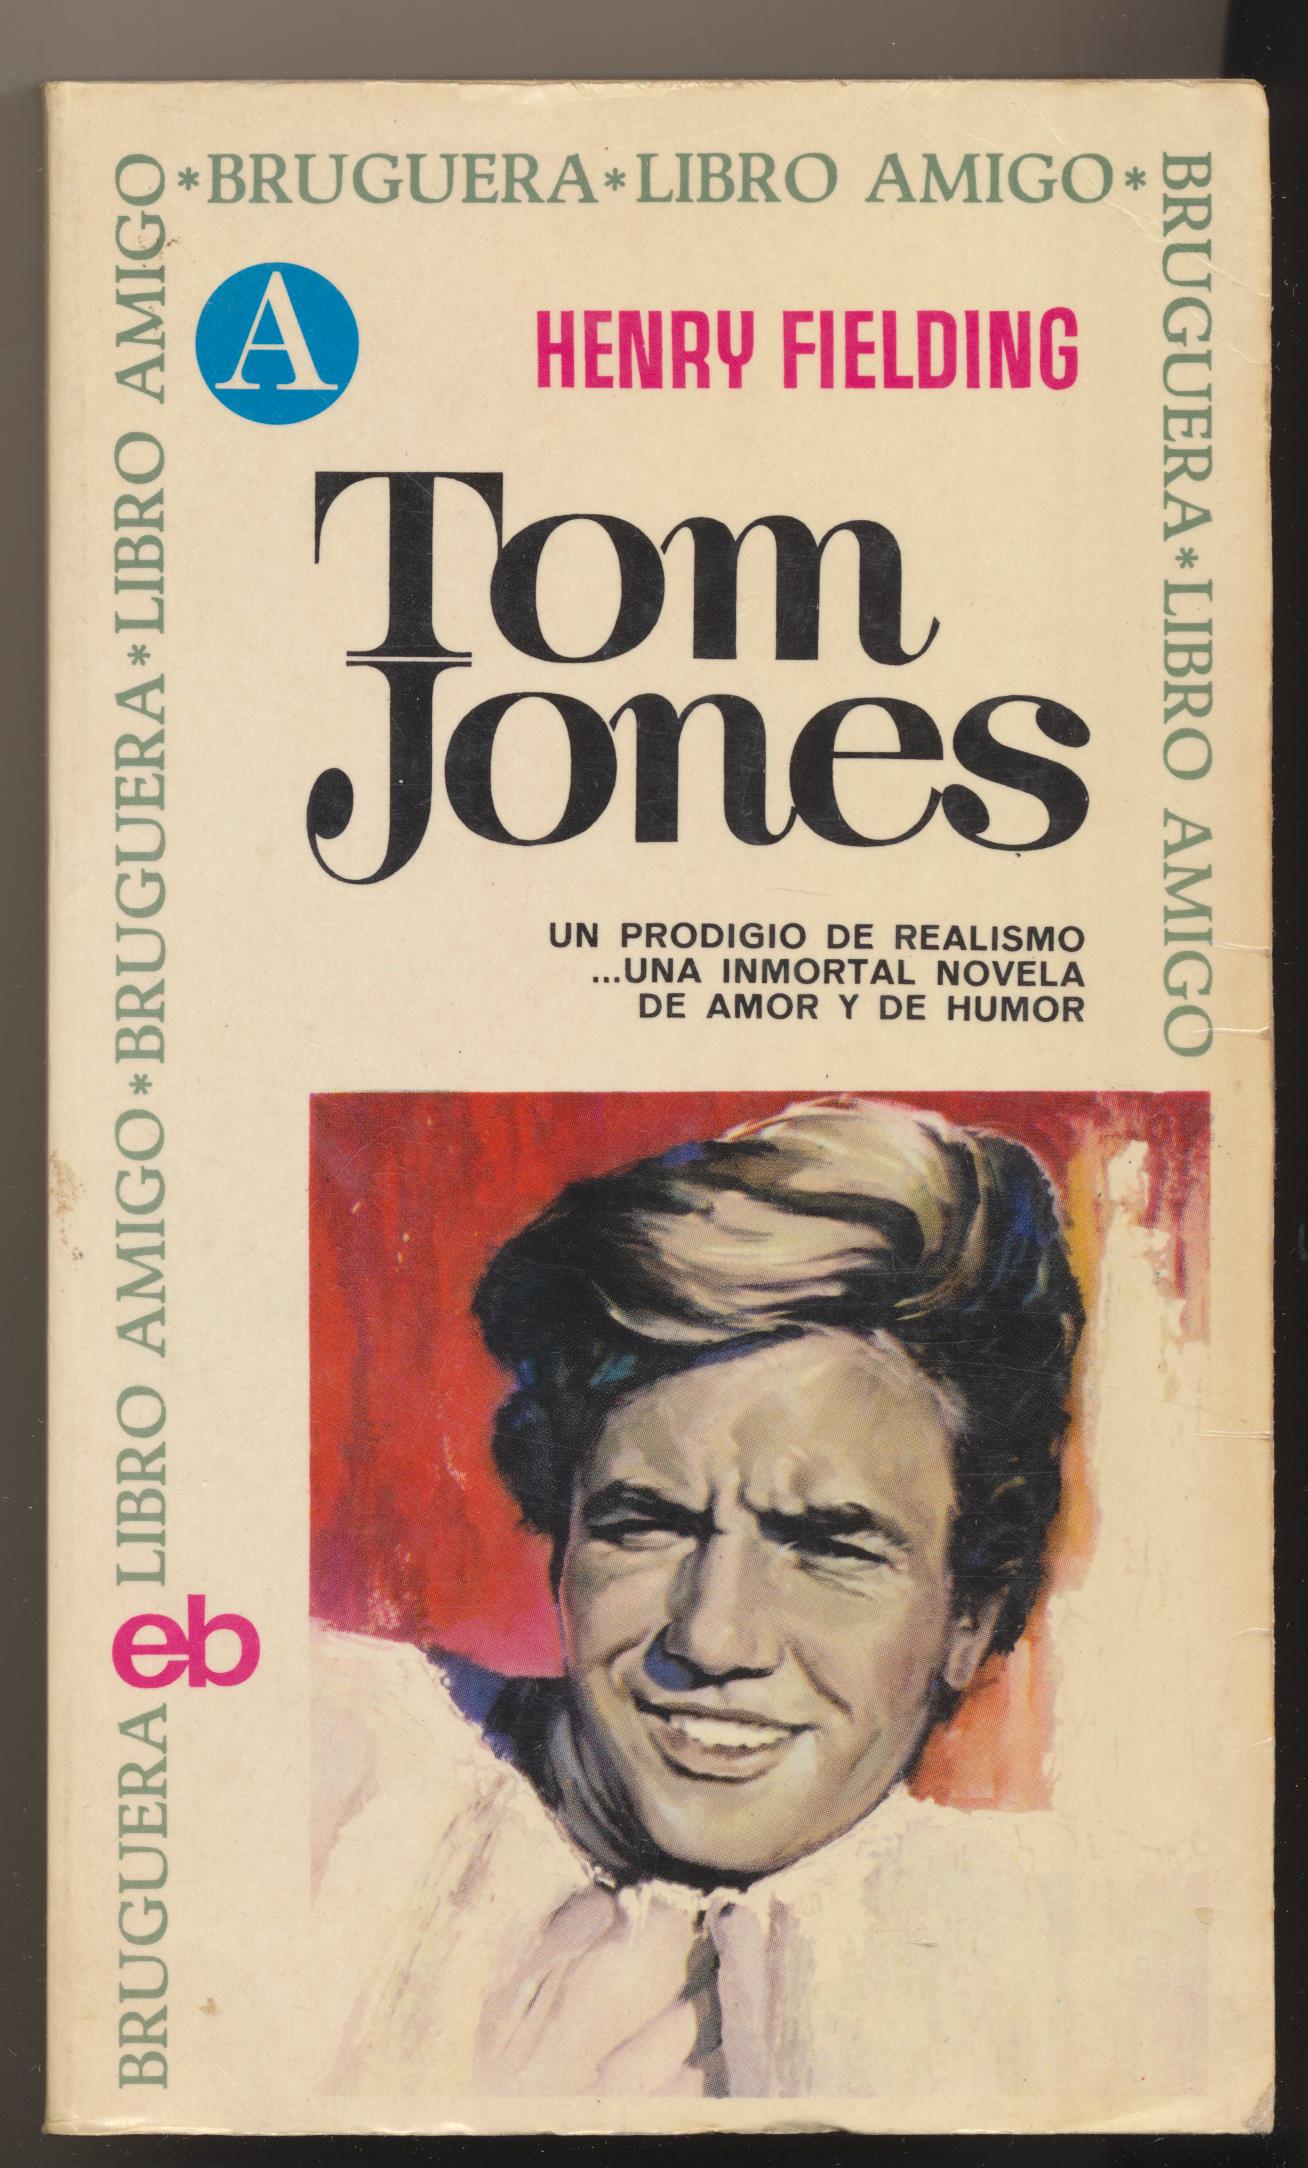 Henry Fielding. Tom jones. 5ª Edición Bruguera 1972